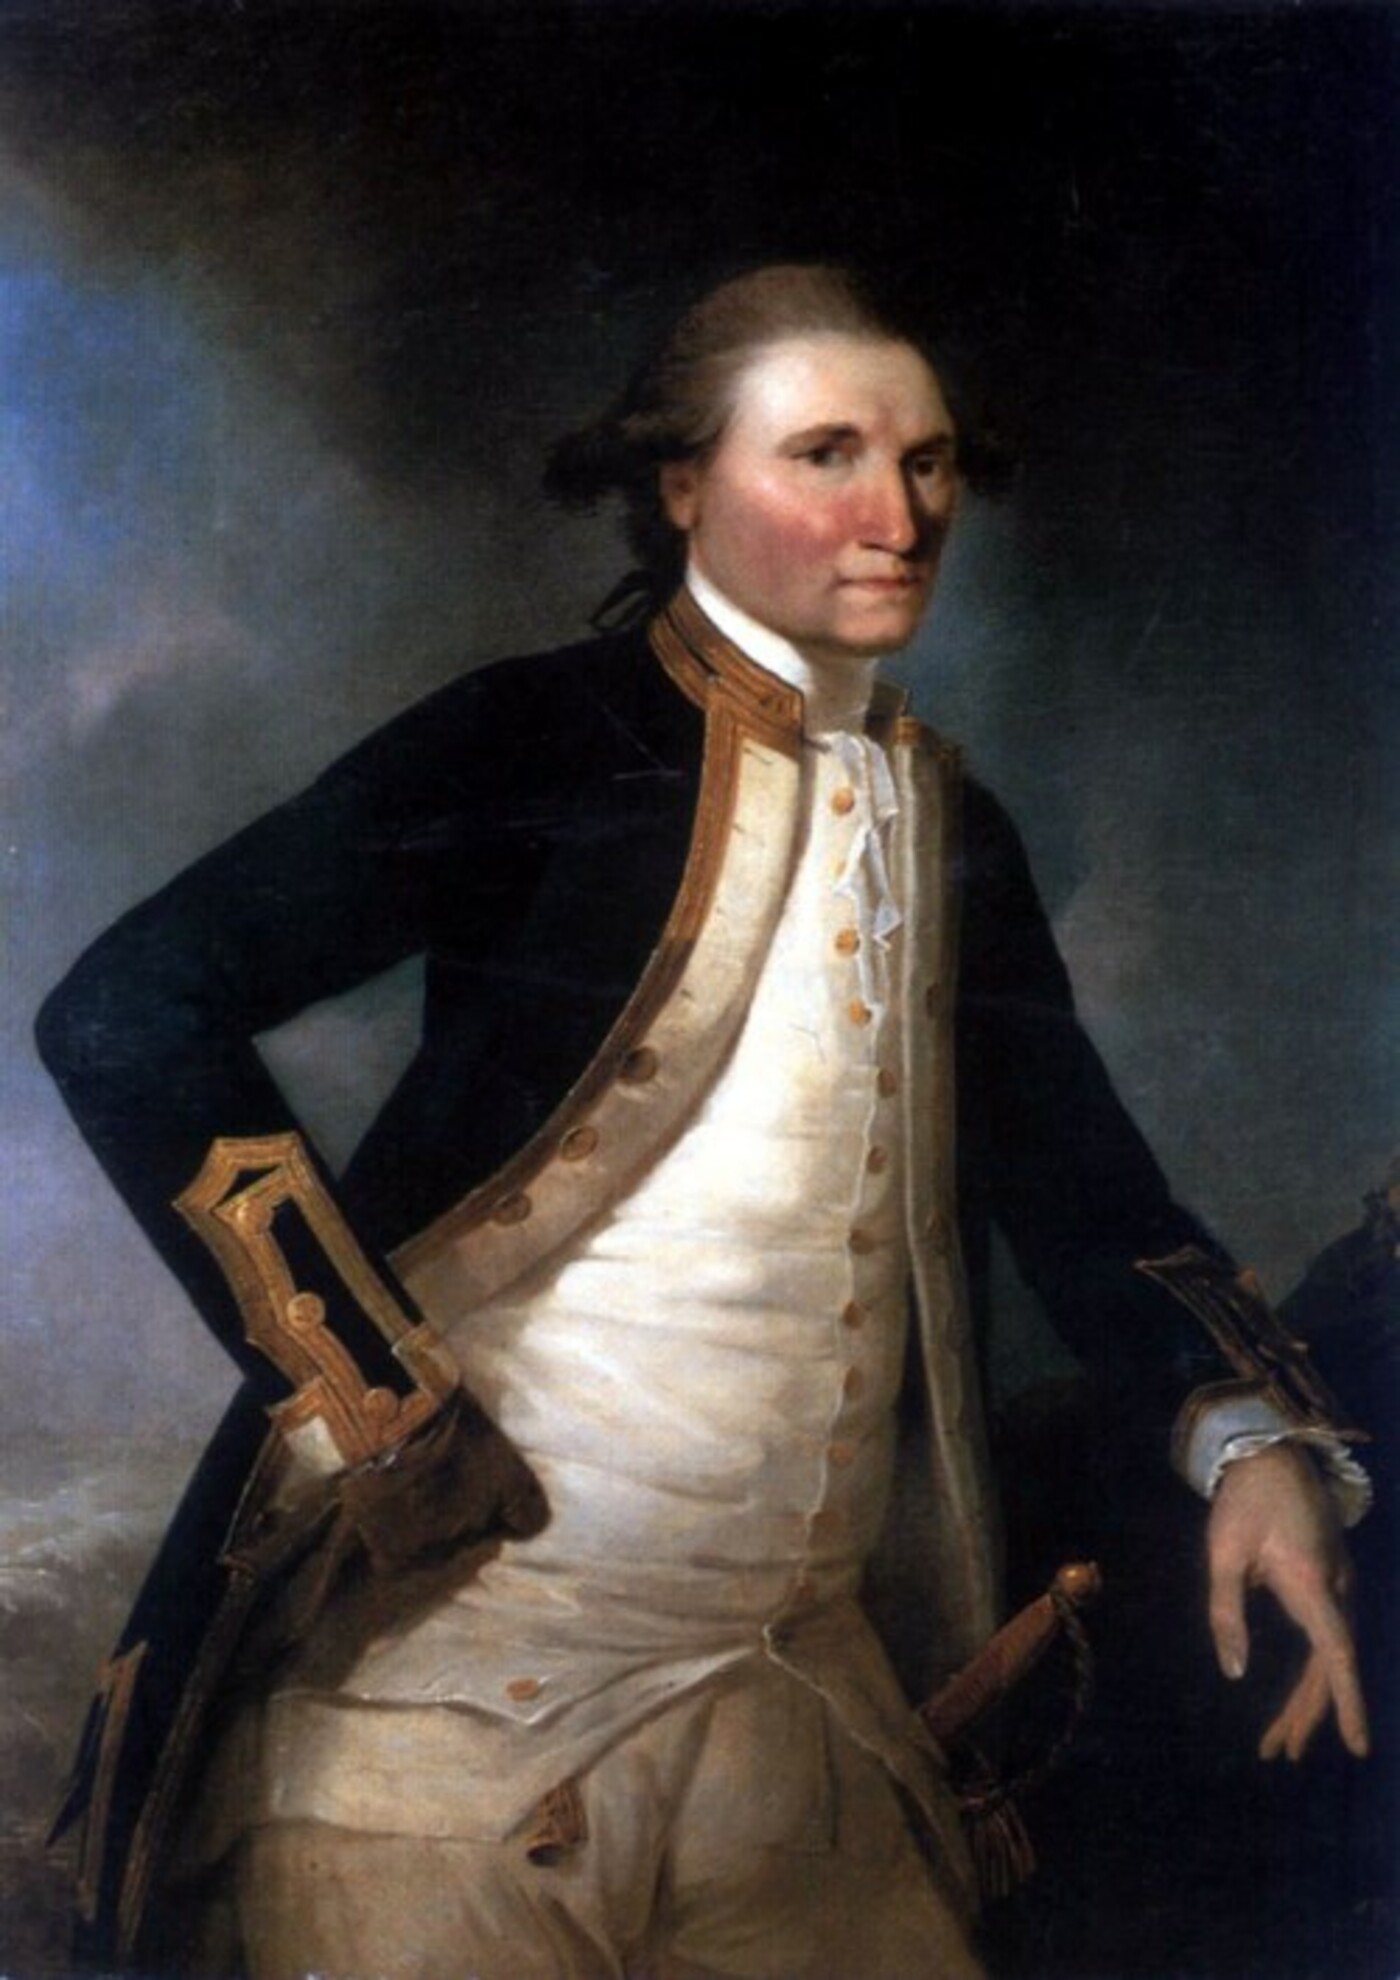 #155 - Viering Captain Cook 250 jaar